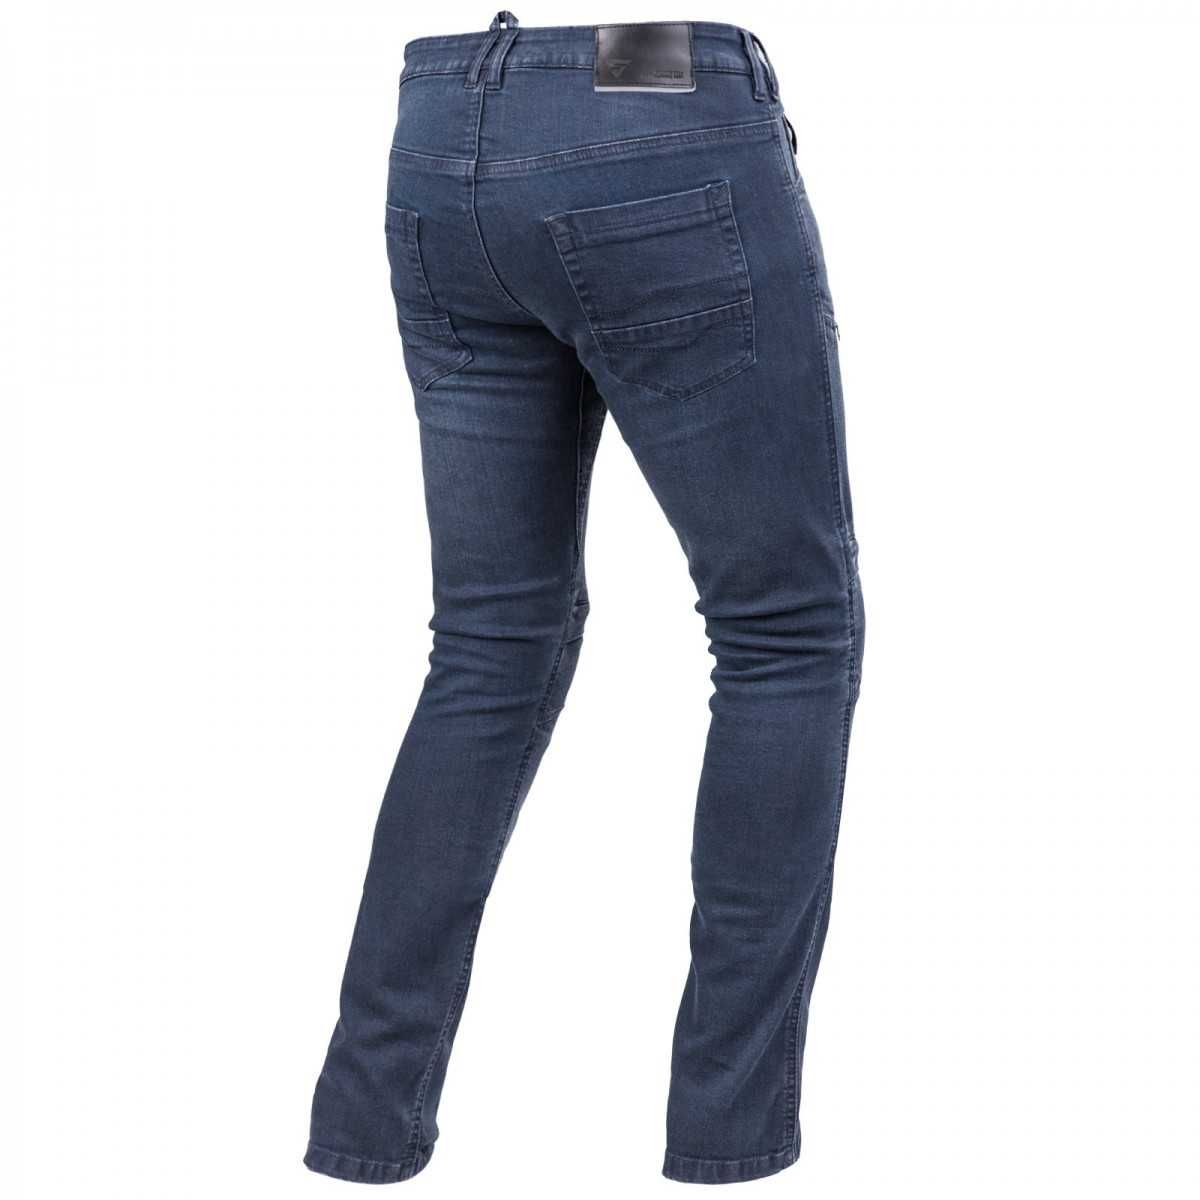 Spodnie męskie jeansy motocyklowe GRAVEL 3.0 SHIMA